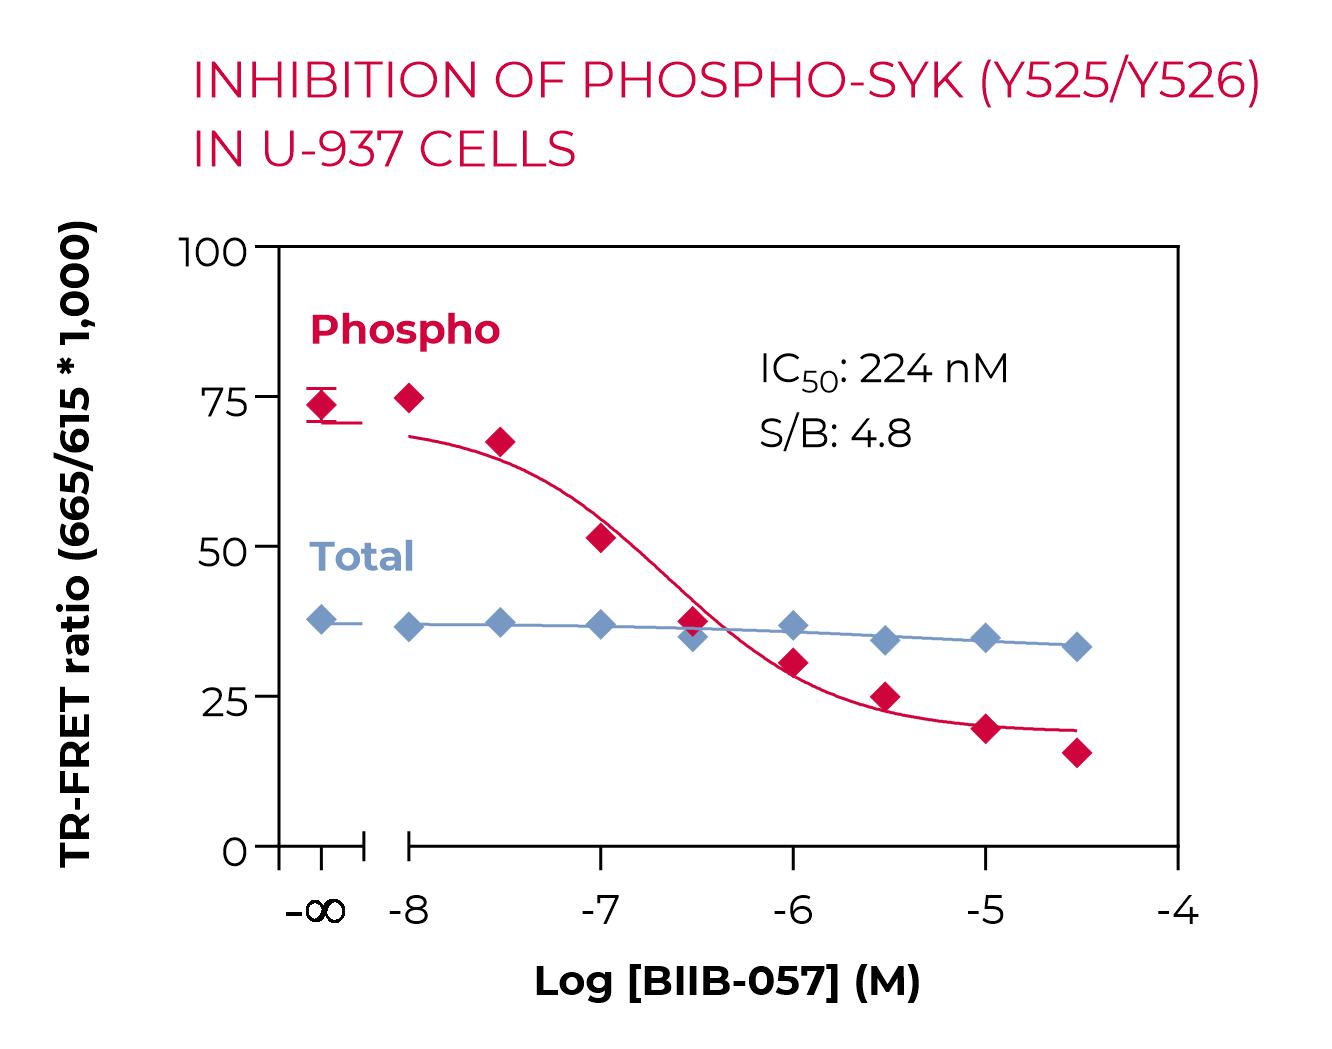 Inhibition of Phospho-SYK (Y526/Y526) in U-937 cells